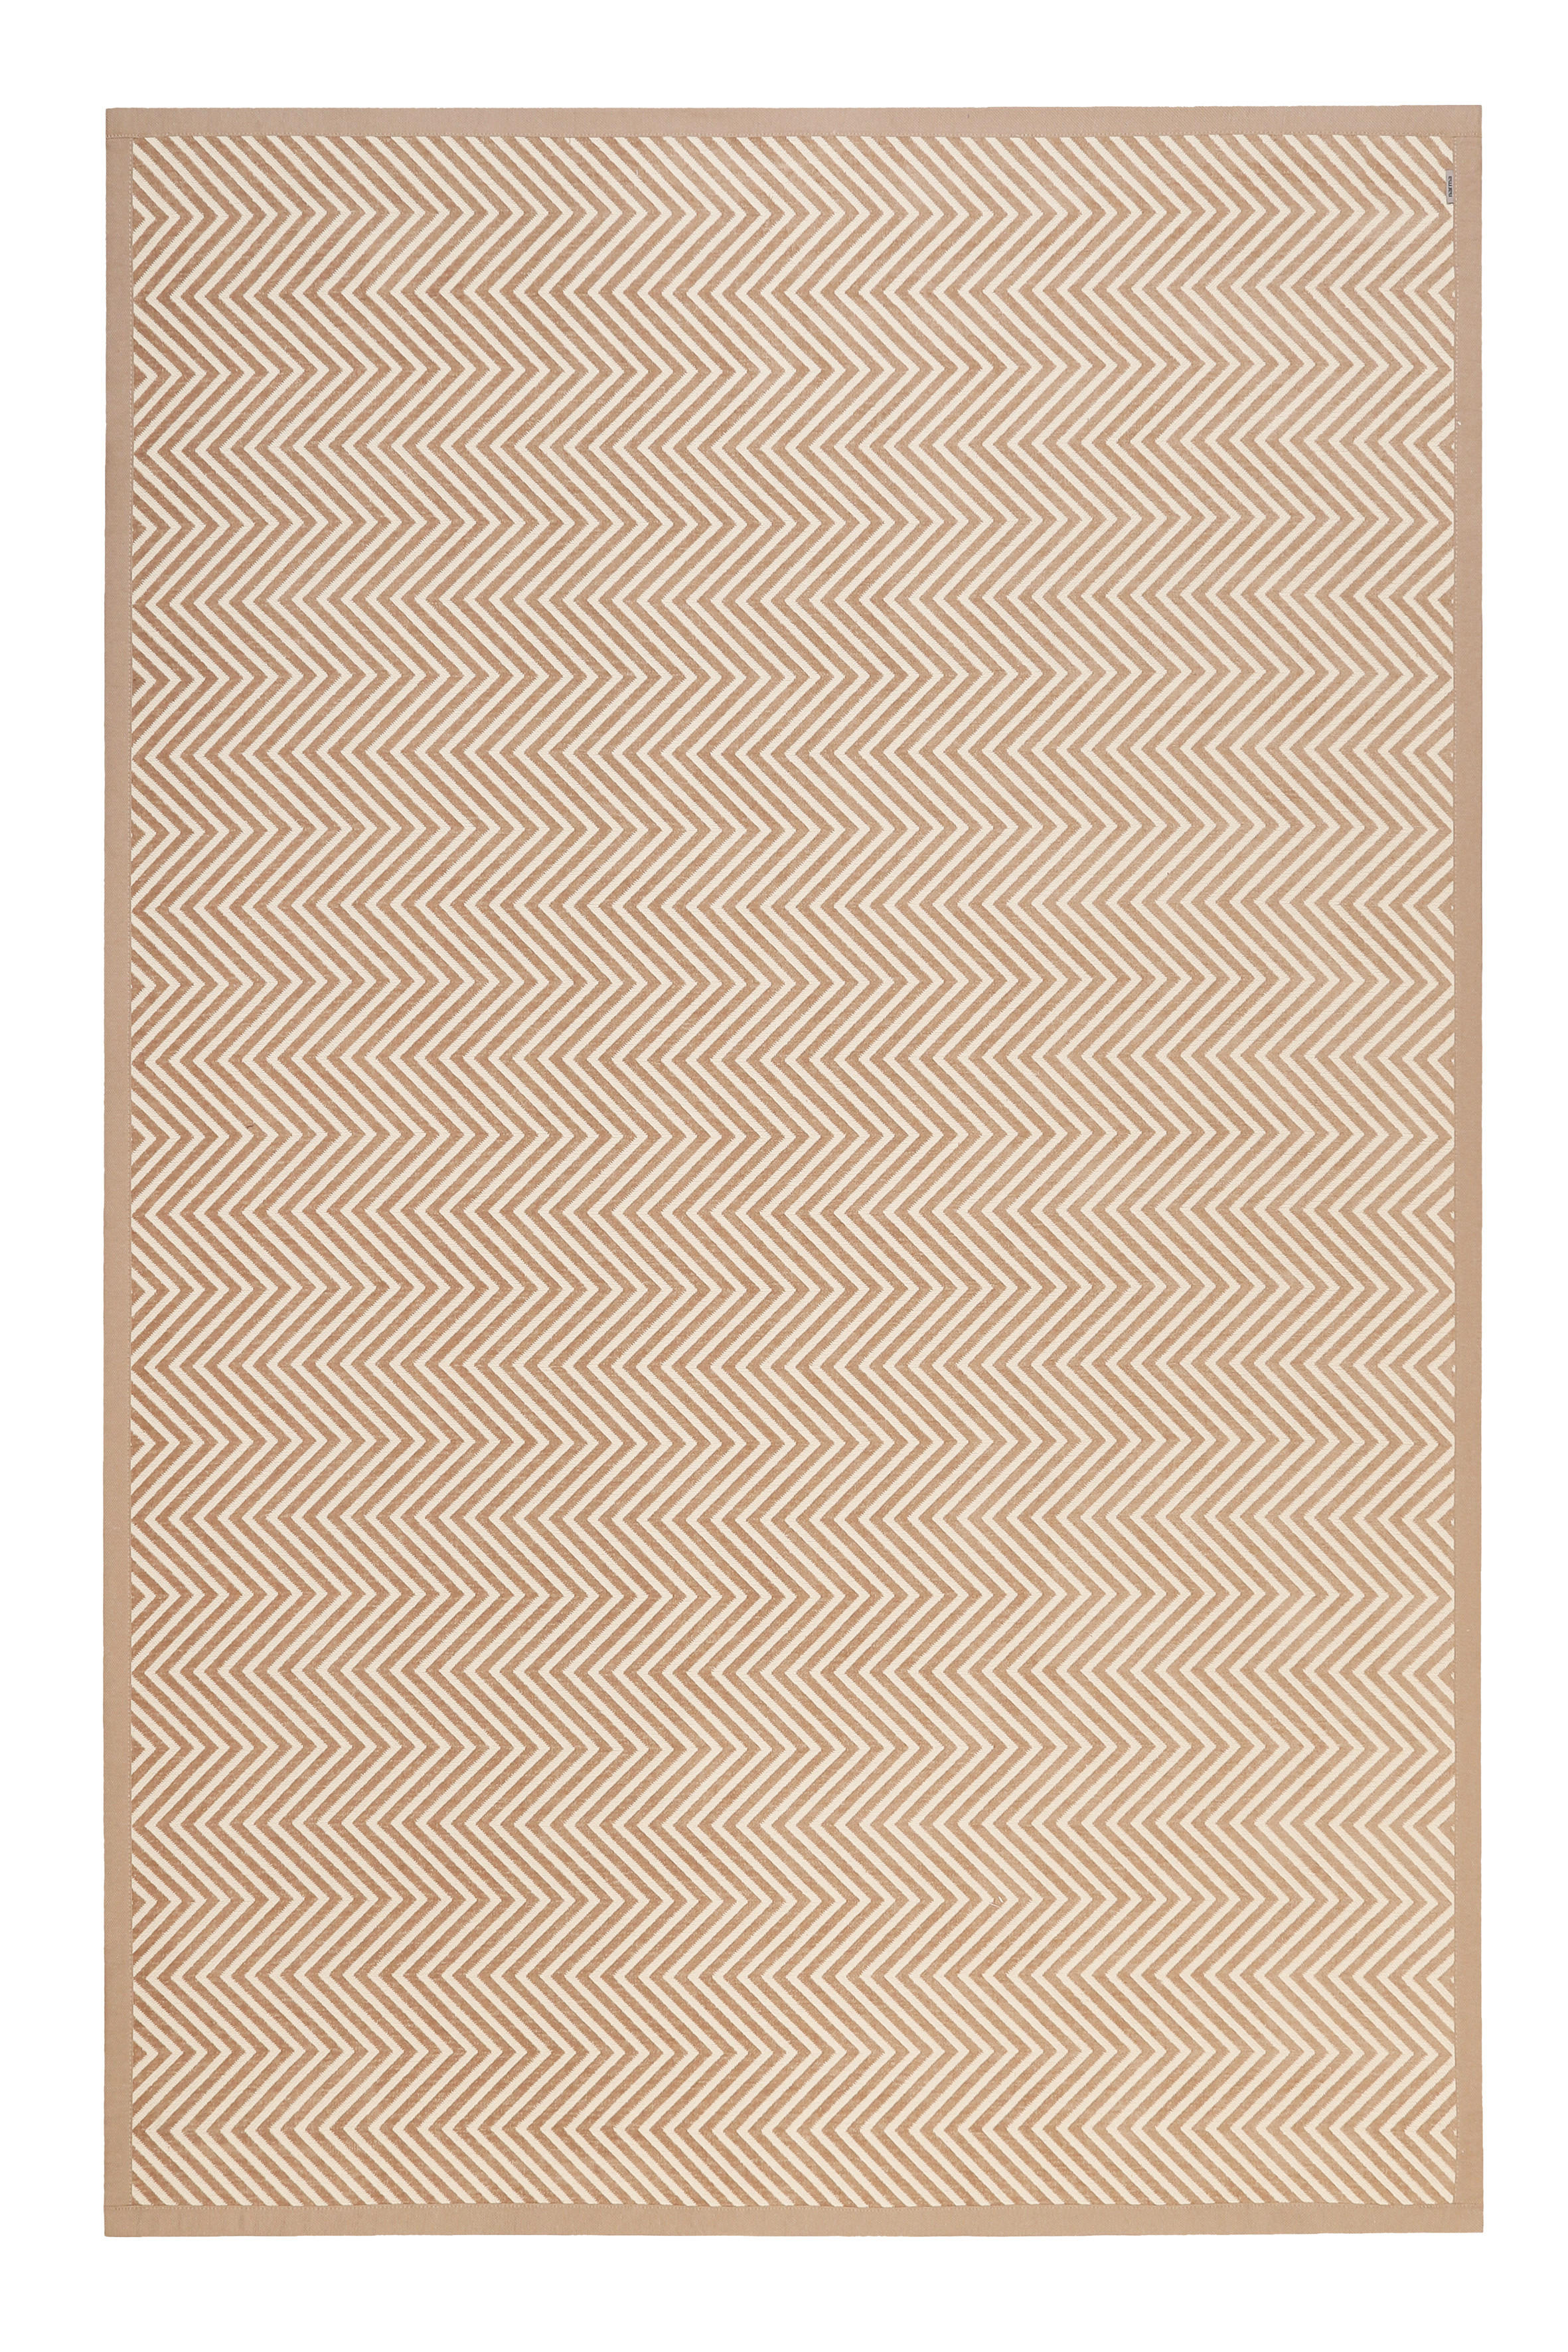 HANDWEBTEPPICH 70/140 cm Paulsen  - Beige, Trend, Textil (70/140cm) - Esprit